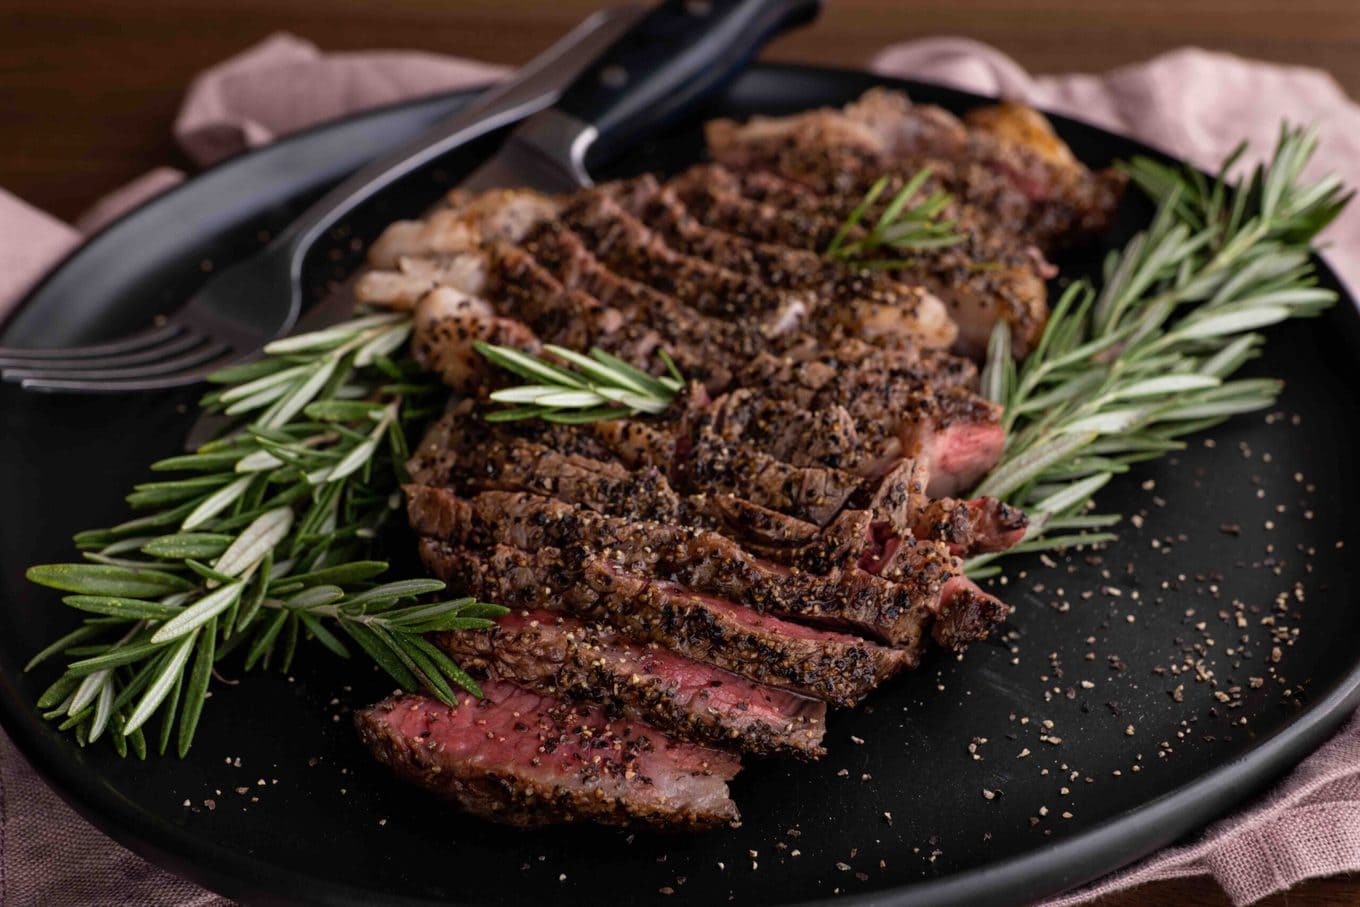 Ribeye Steak sliced on serving platter